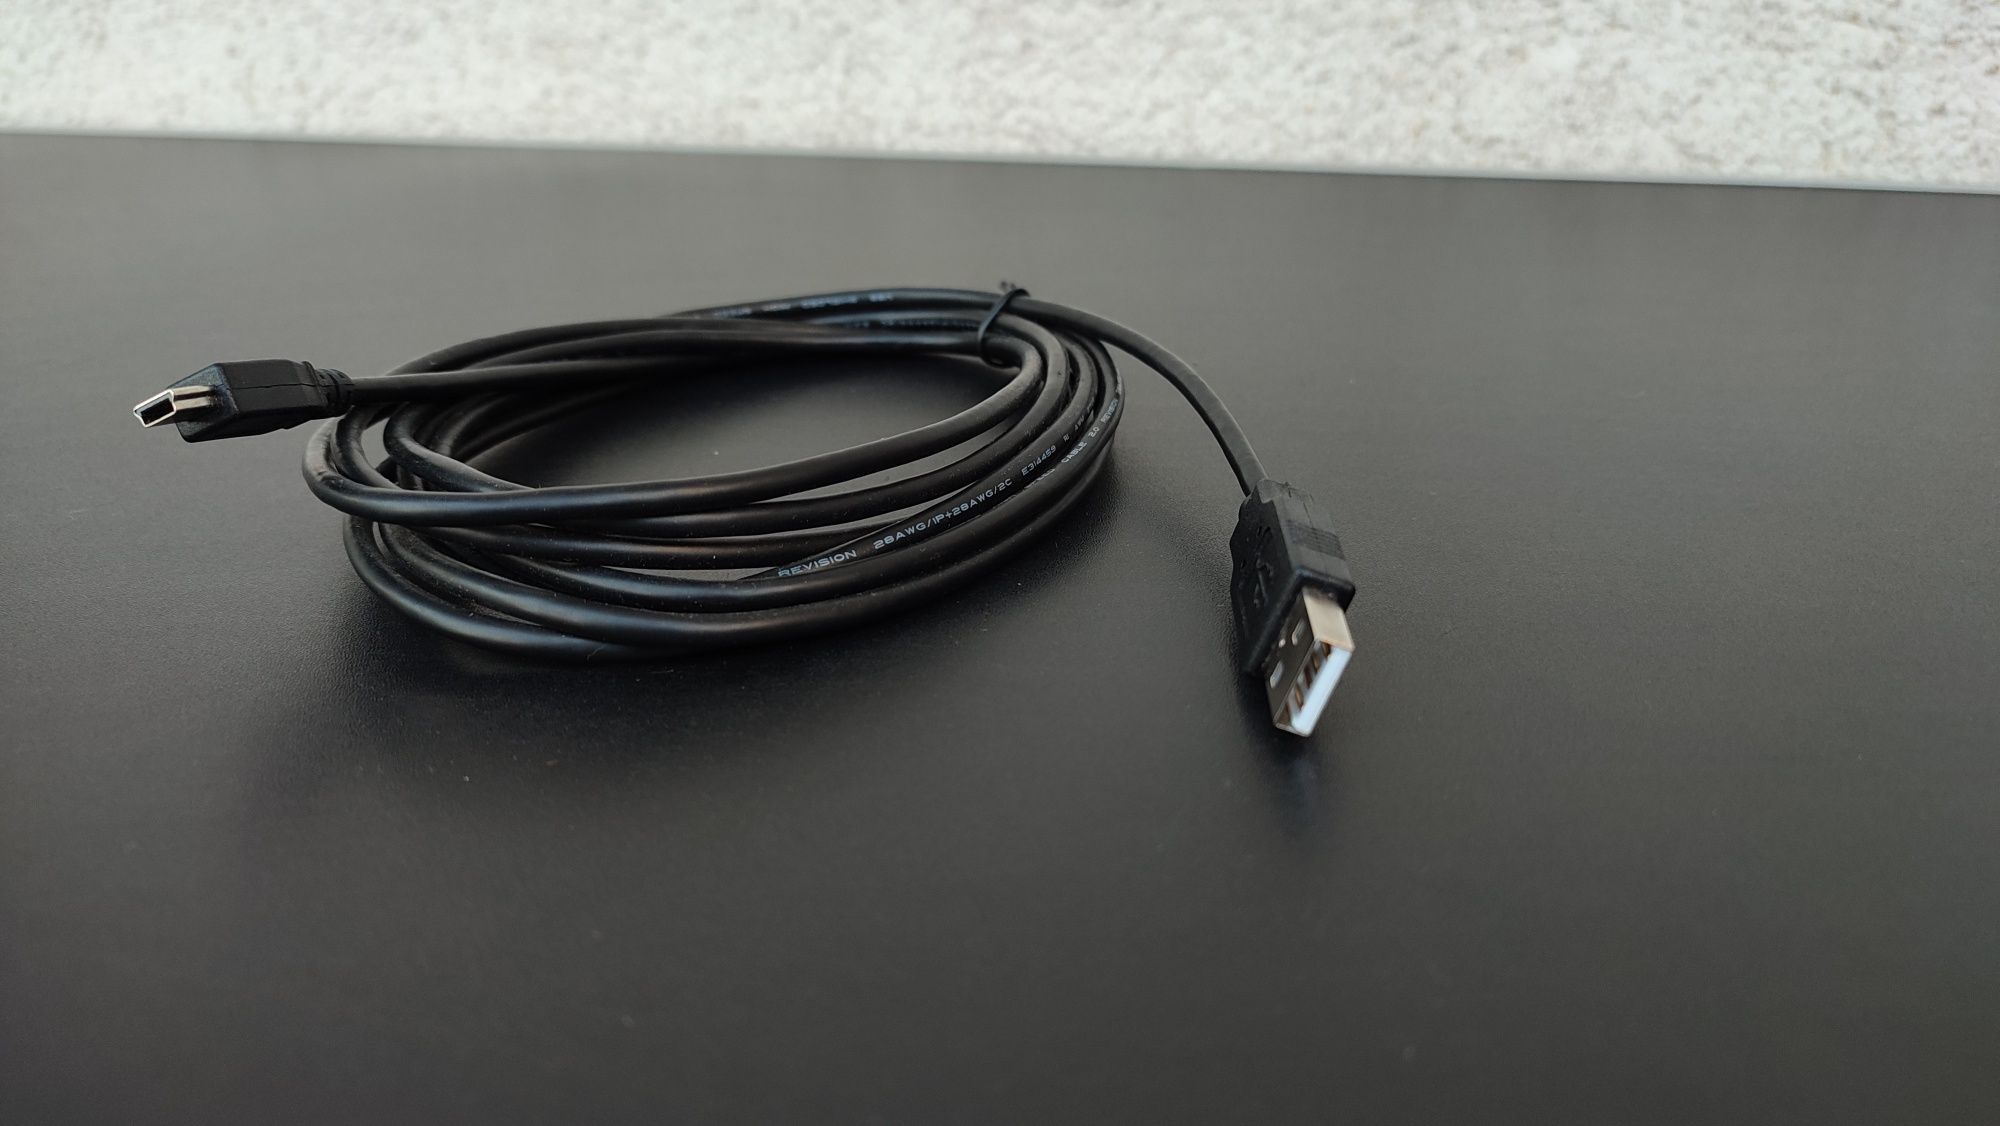 cablu ecranat de mare viteza usb - mini usb 2.0 3 metri revision